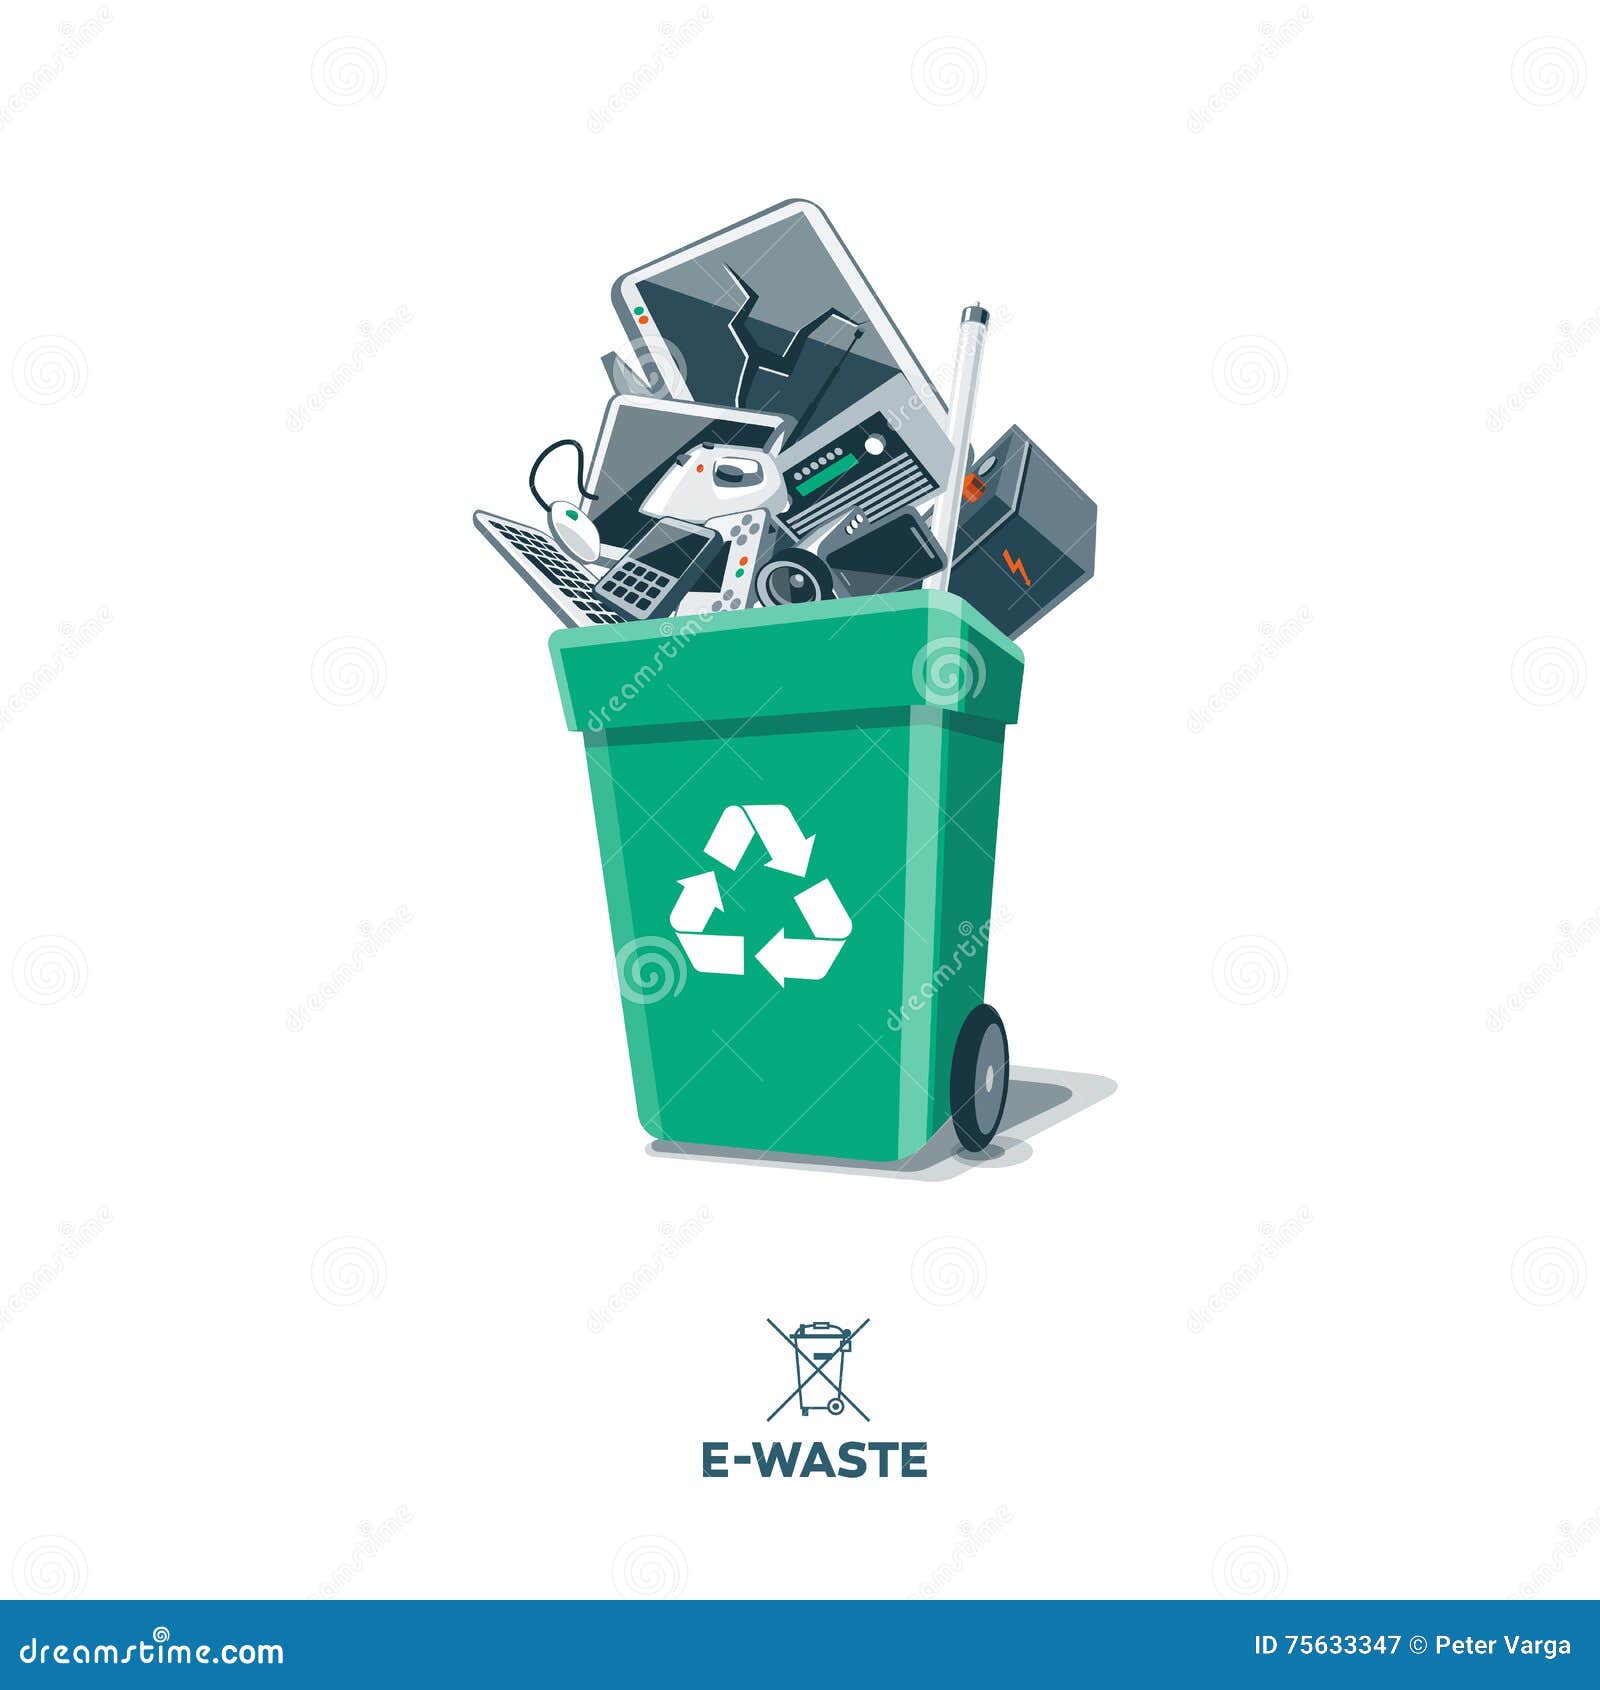 e-waste in recycling bin